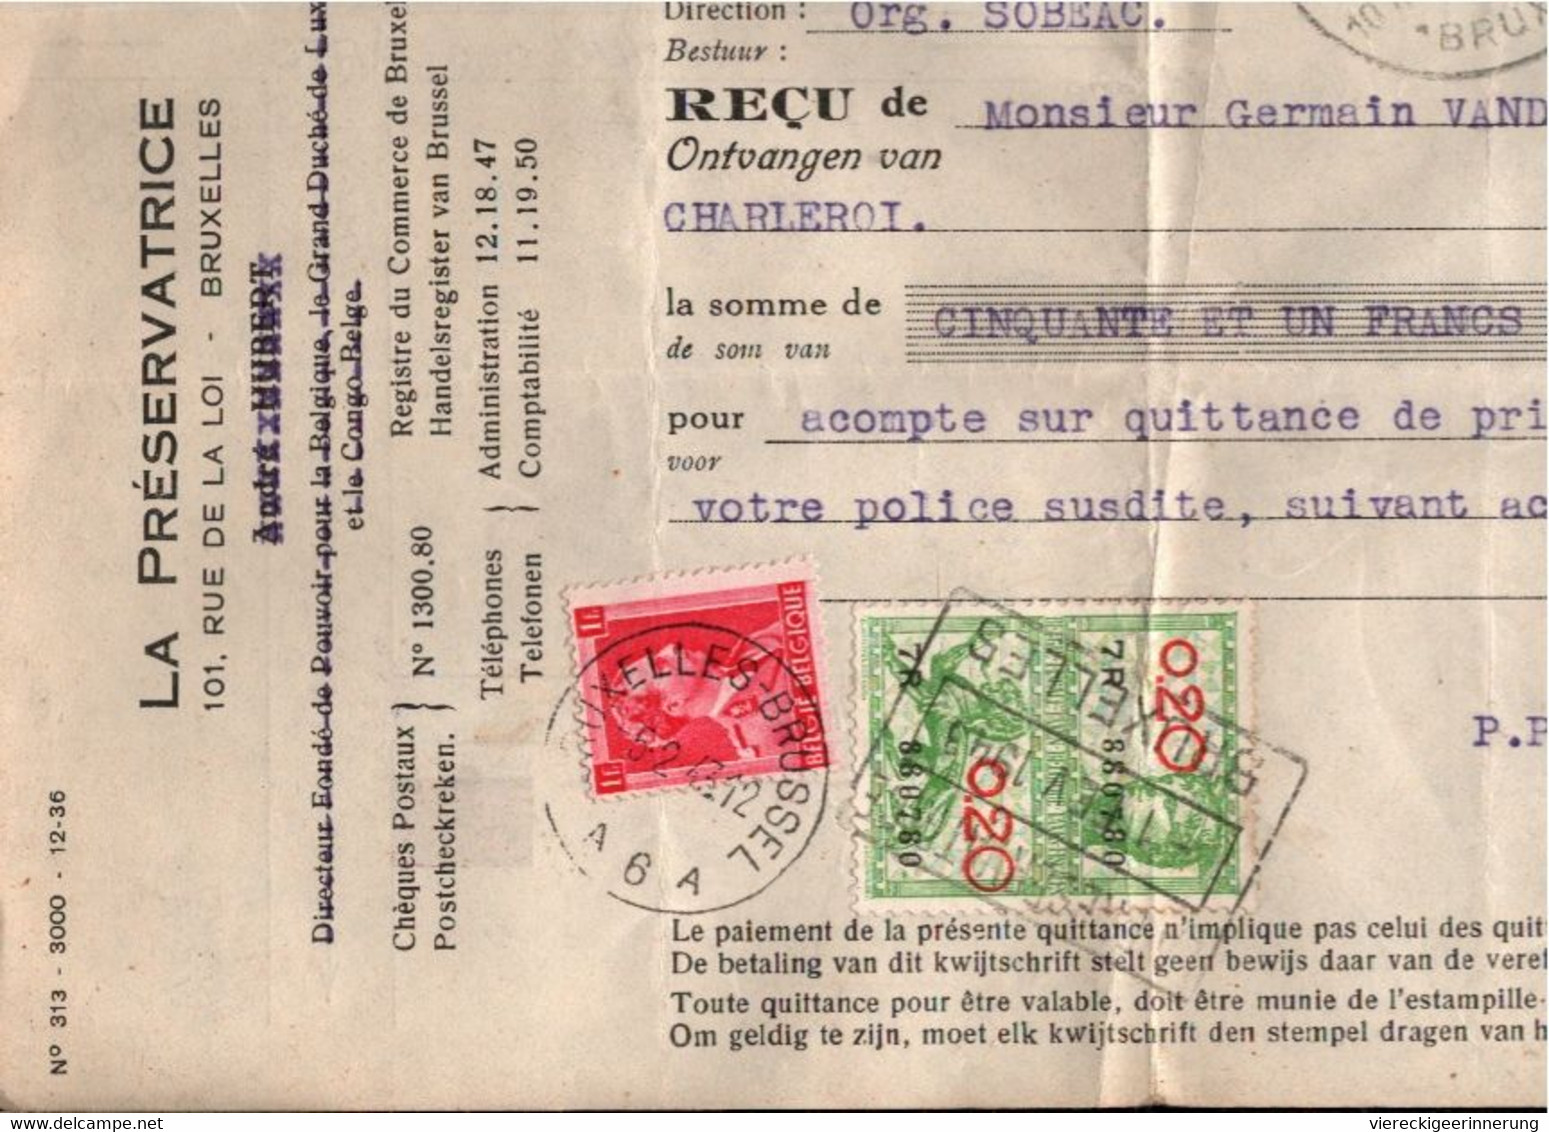 ! 50 pieces, Gros Lot de Fiscaux documents, Belgique, Belgien, Belgium, Steuermarken, Tax stamps